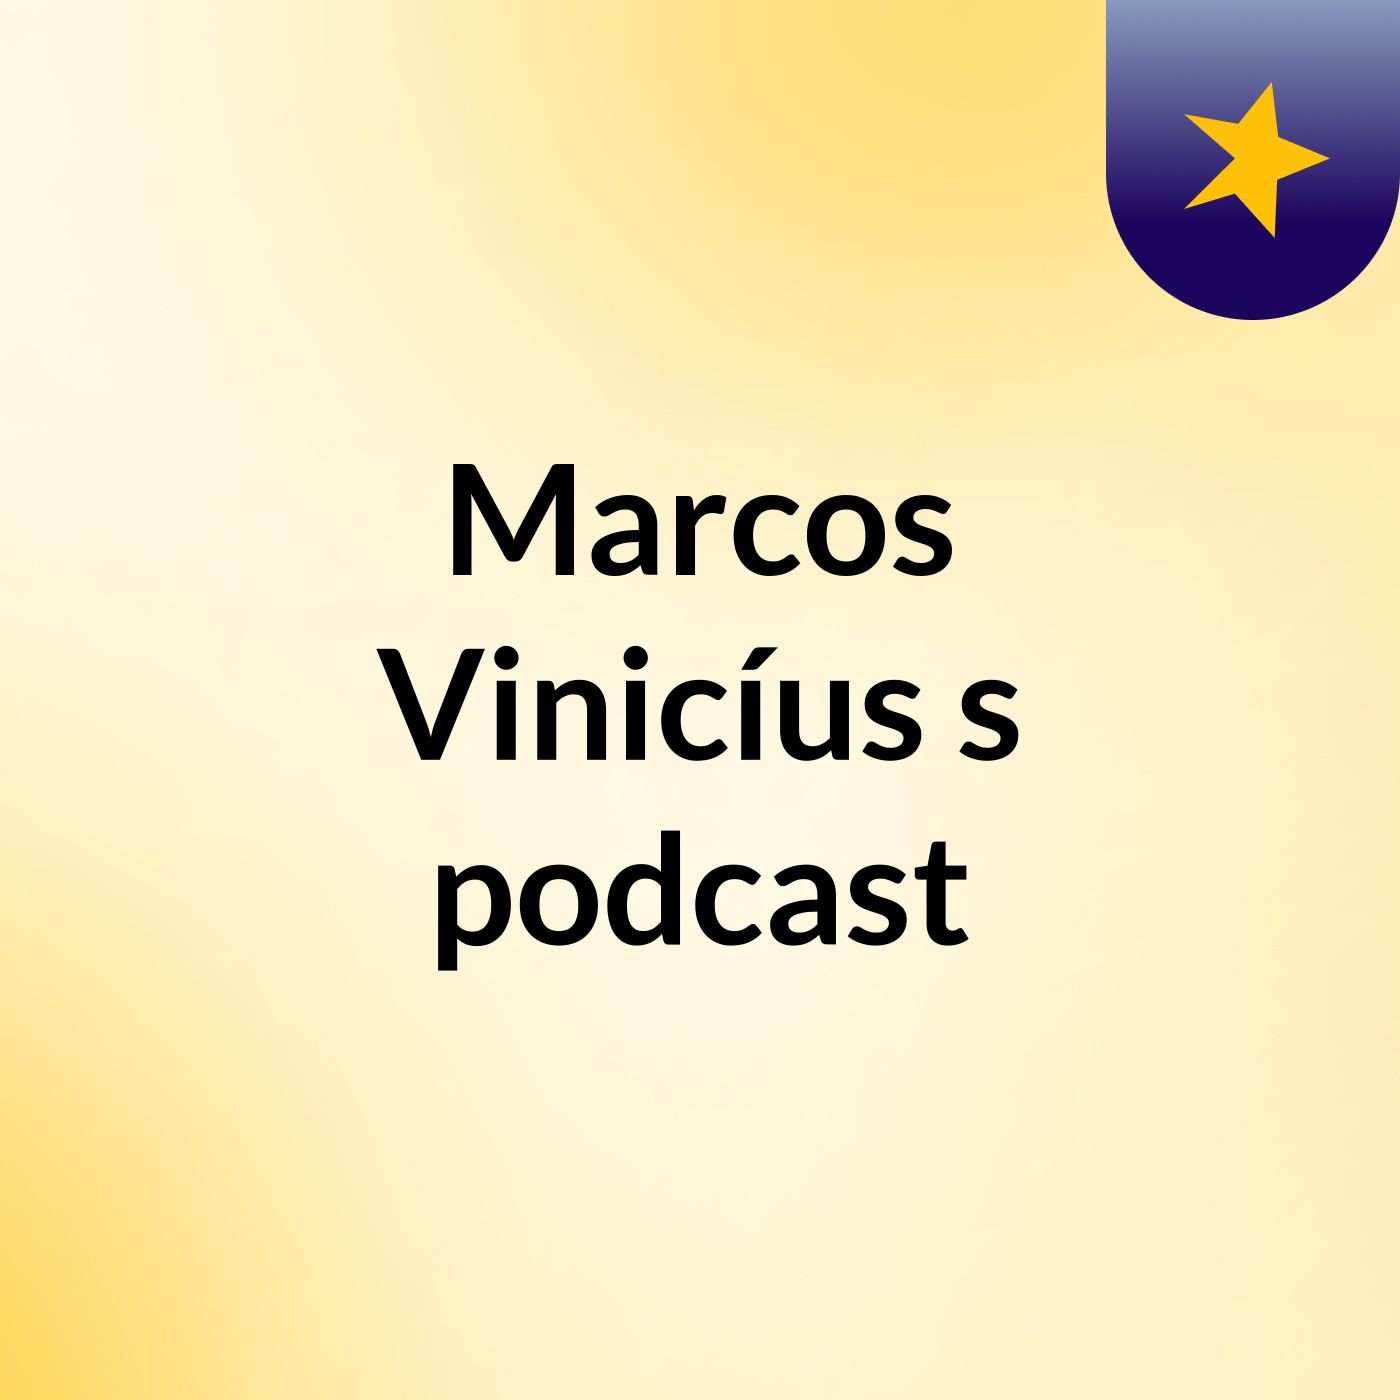 Marcos Vinicíus's podcast